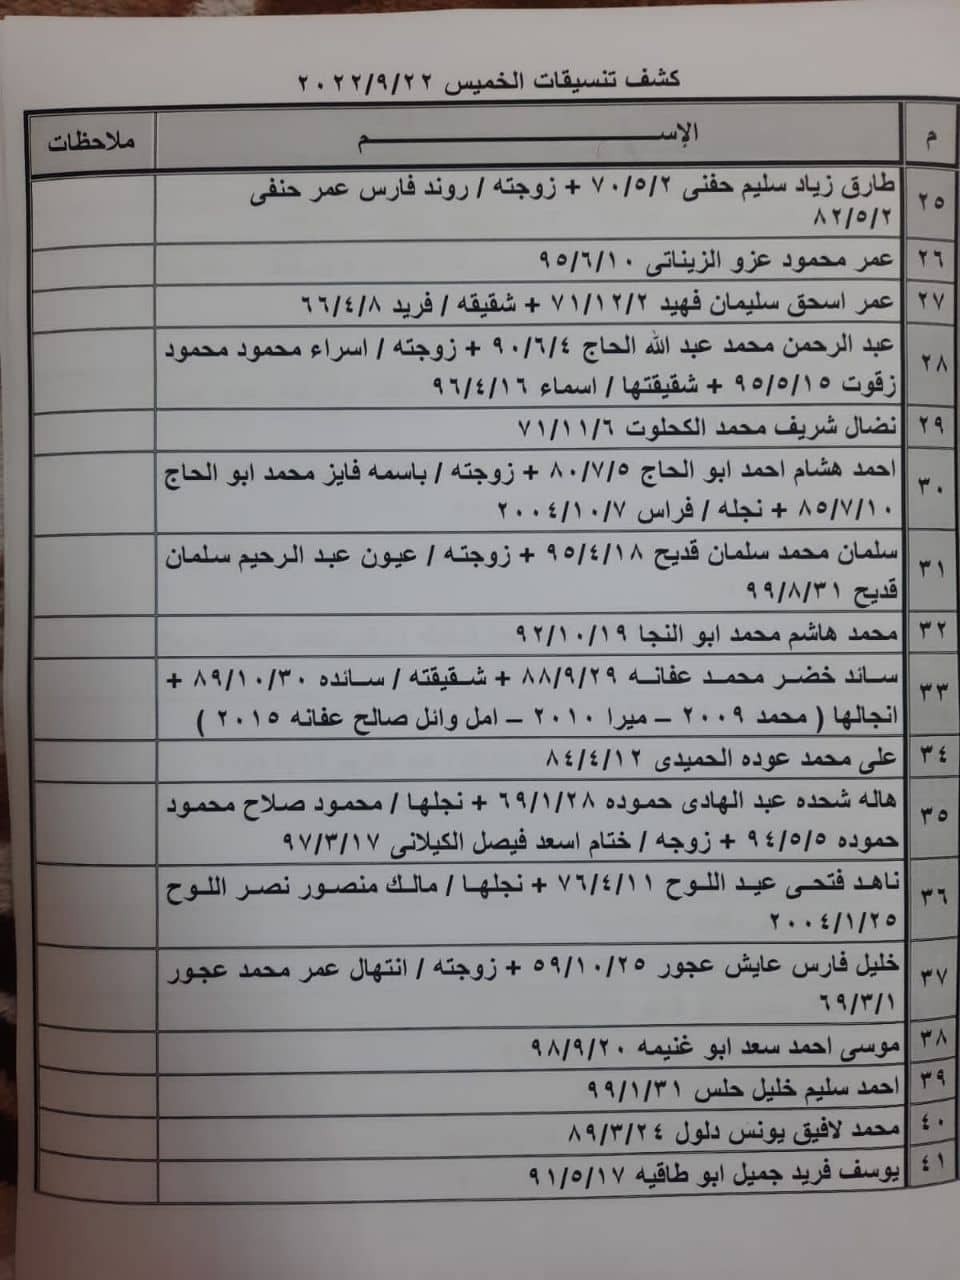 بالأسماء كشف "تنسيقات مصرية" للسفر عبر معبر رفح الخميس 22 سبتمبر 2022